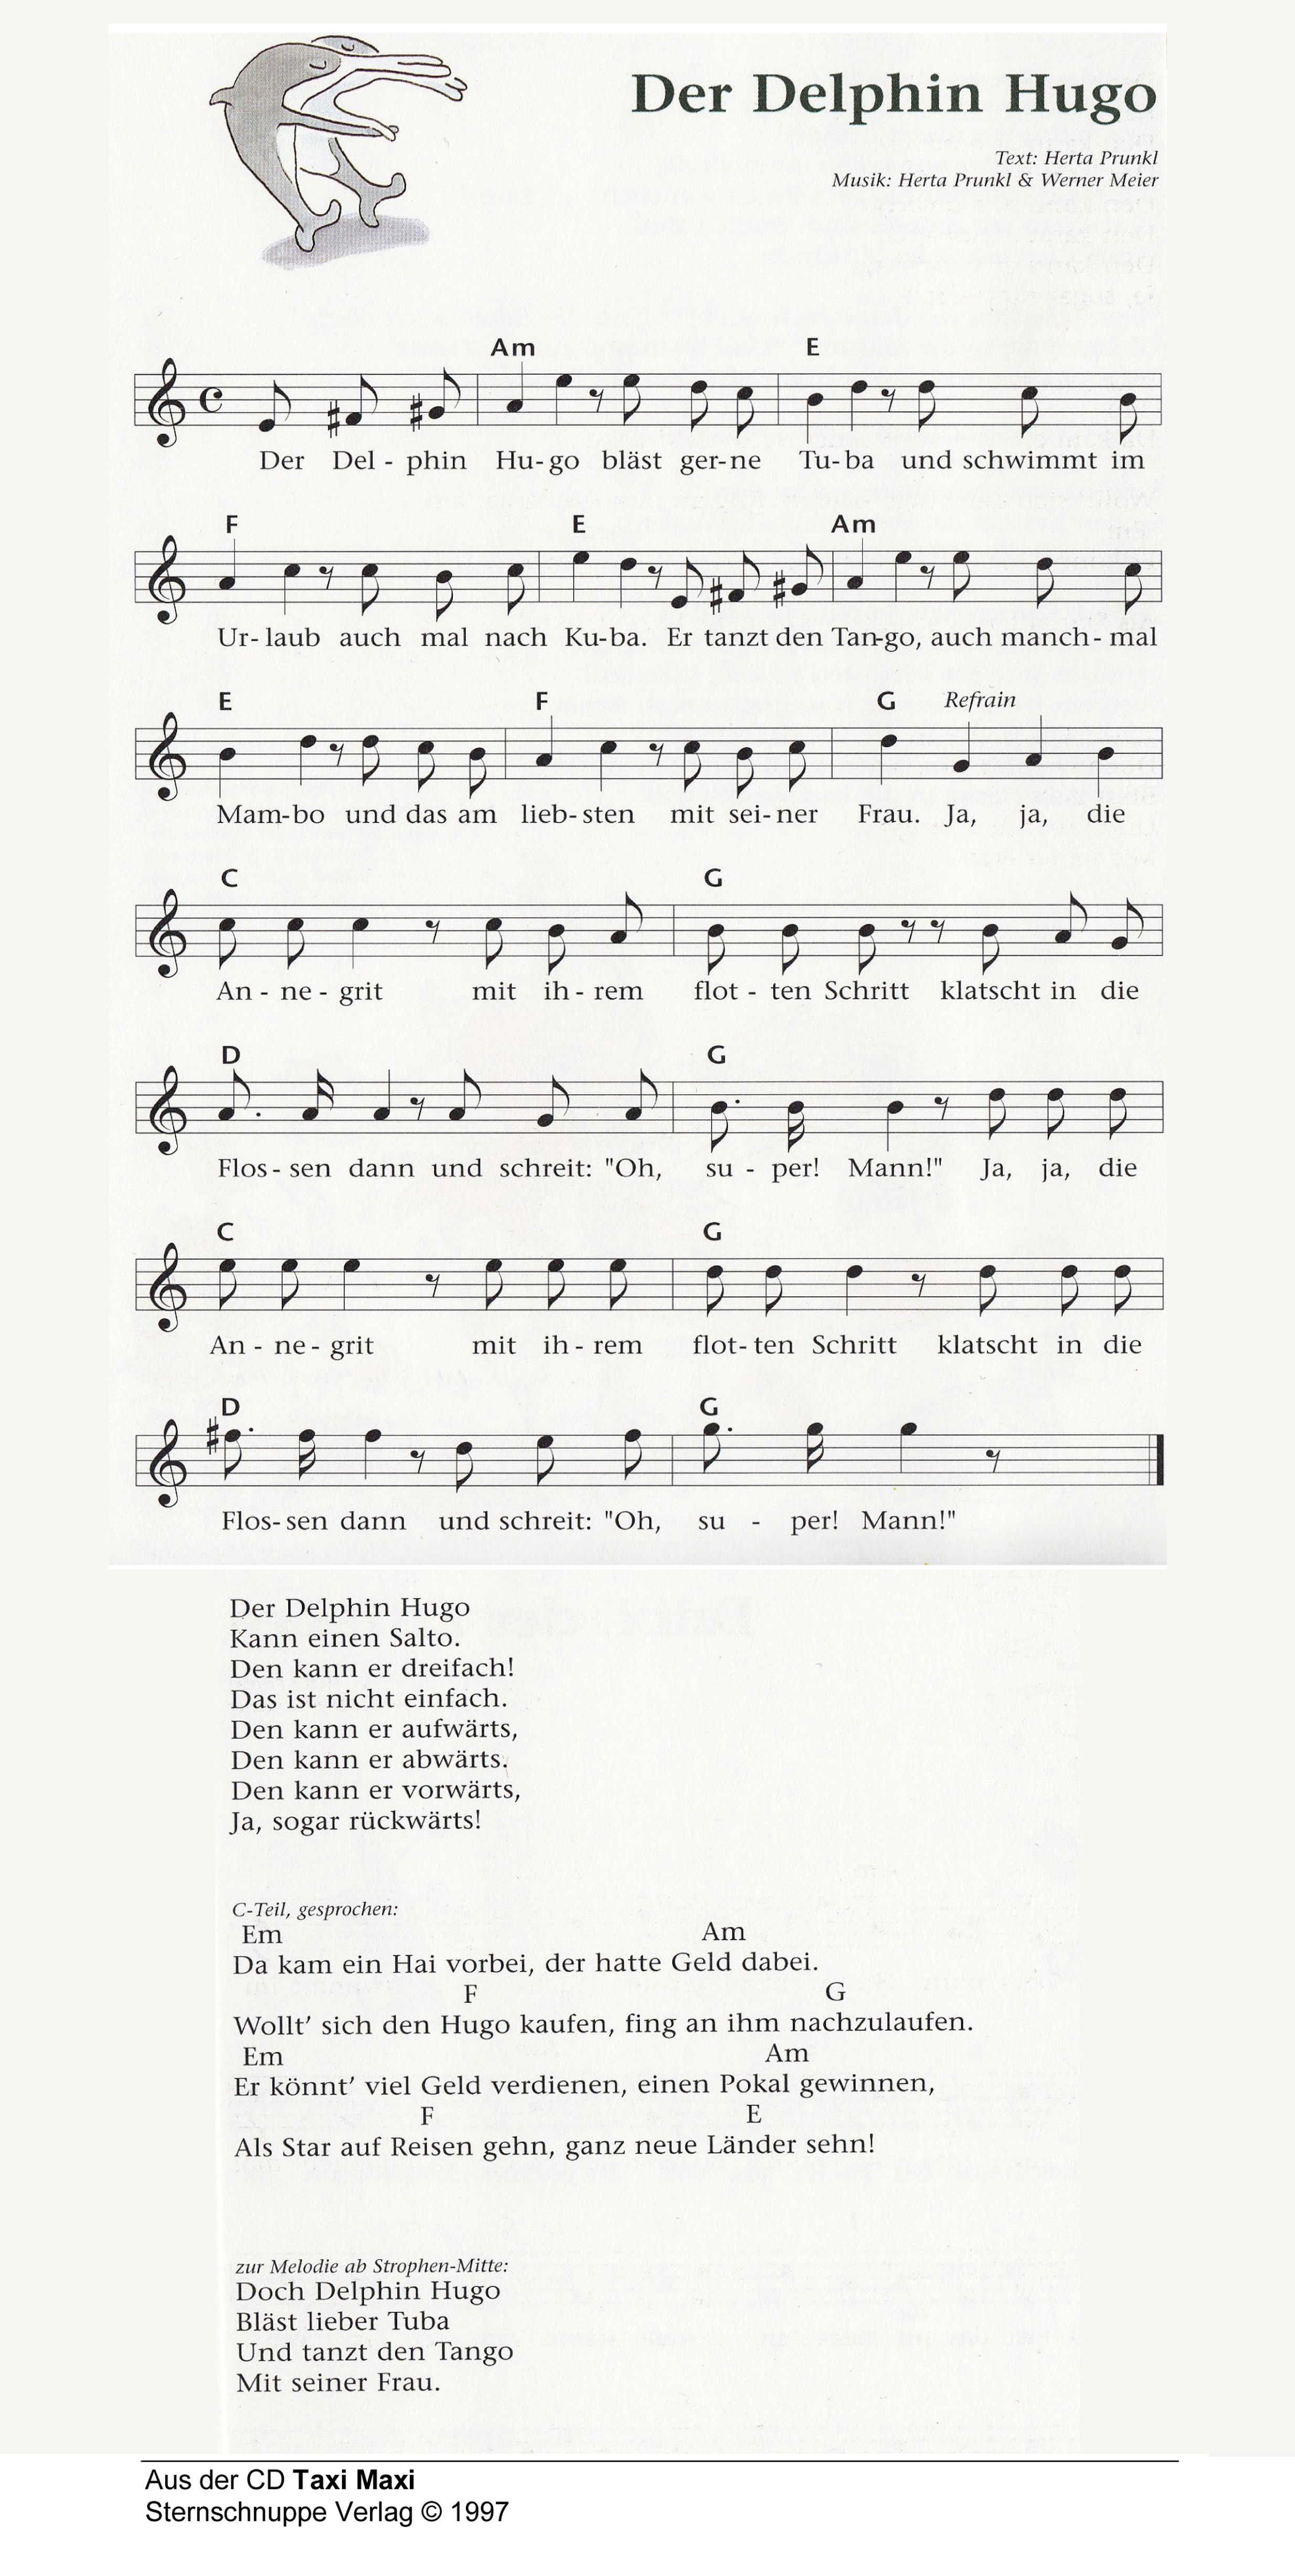 Liedtext, Akkorde und Noten vom Kinderlied Der Delfin Hugo (Remix fürs Kinder-Tanz-Fest)